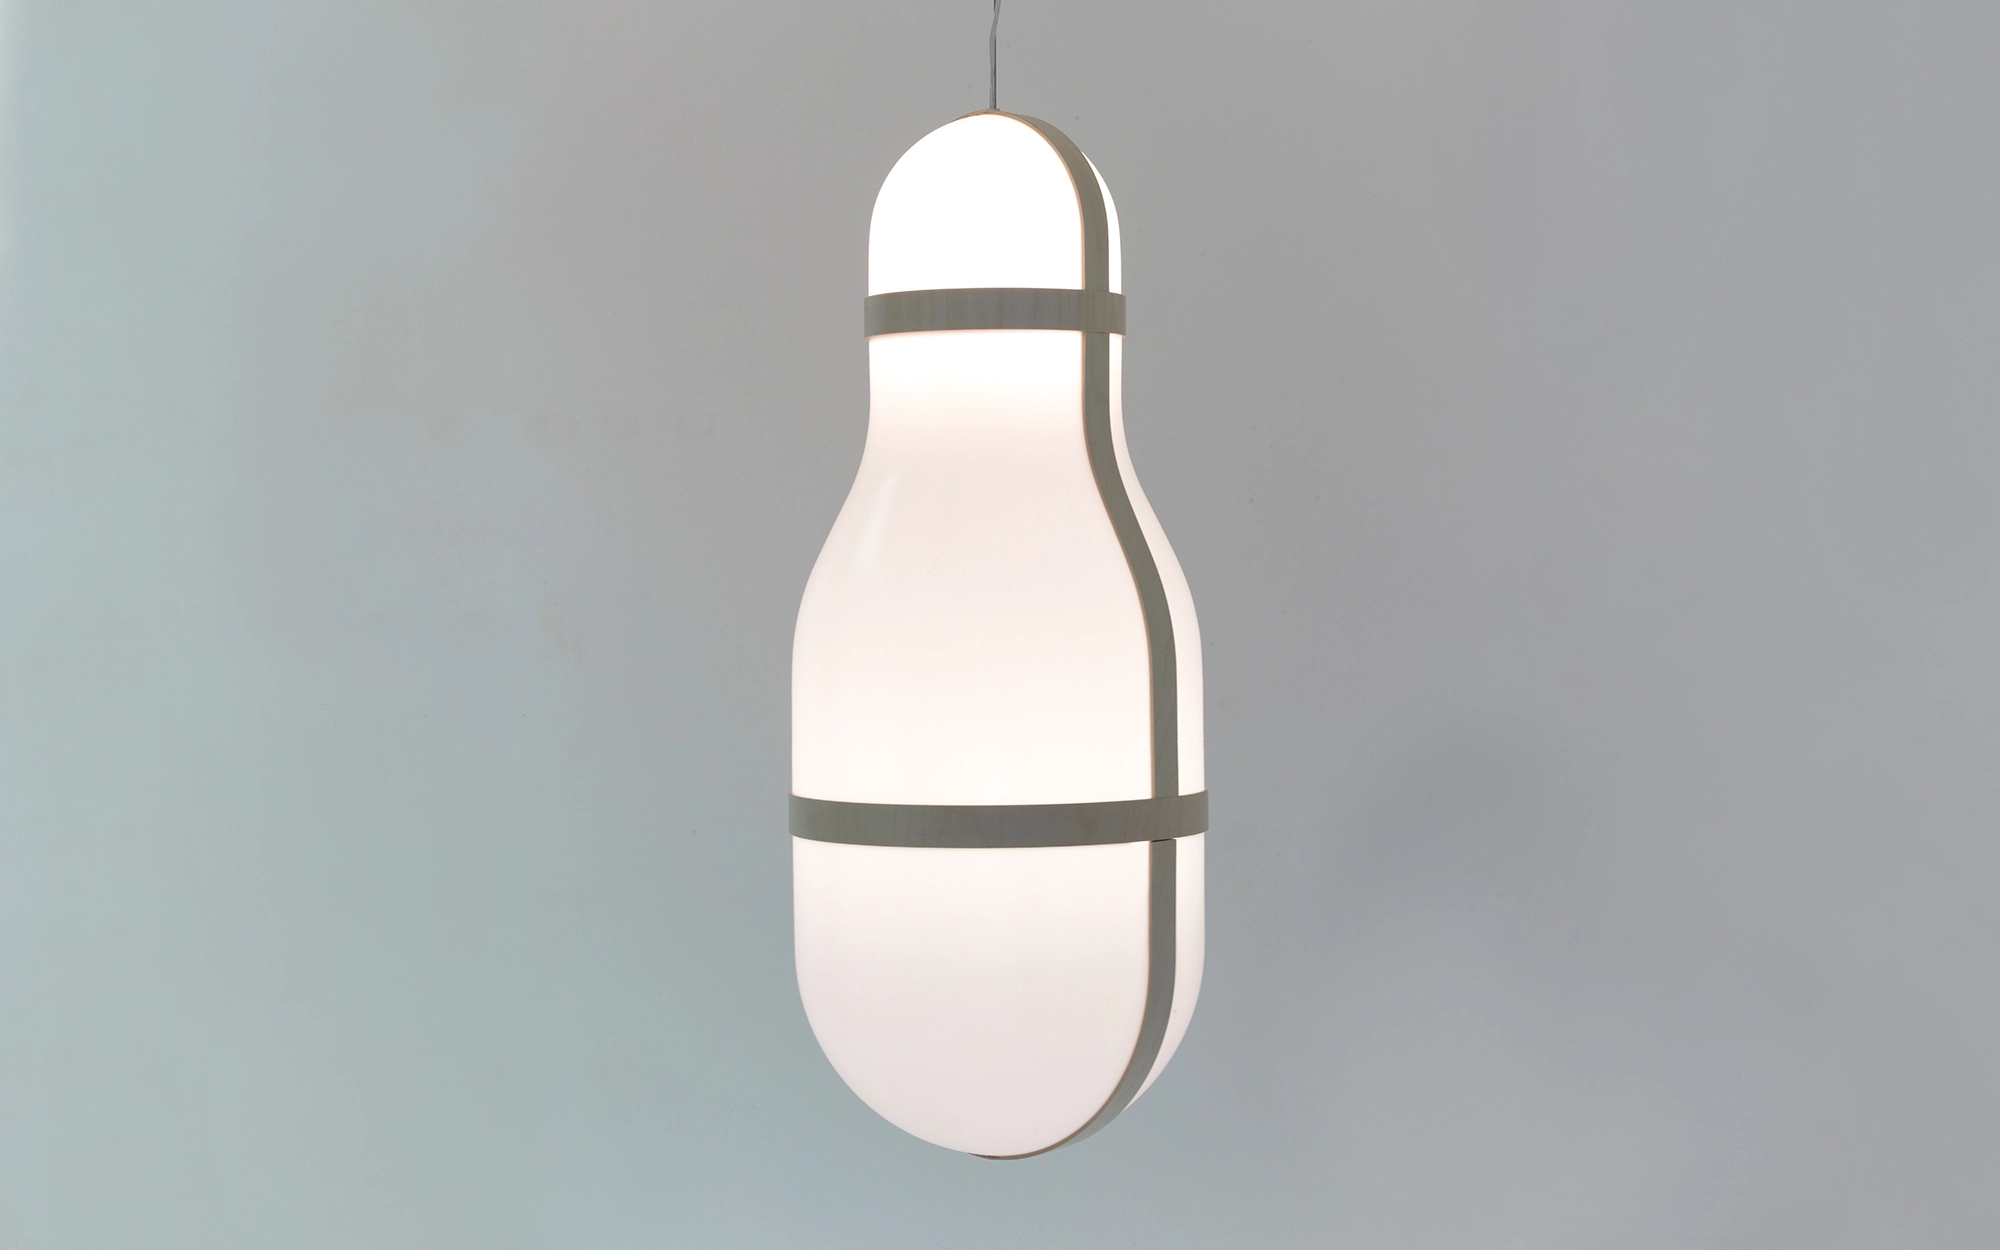 Objet Lumineux - small model - Ronan & Erwan Bouroullec - Table light - Galerie kreo